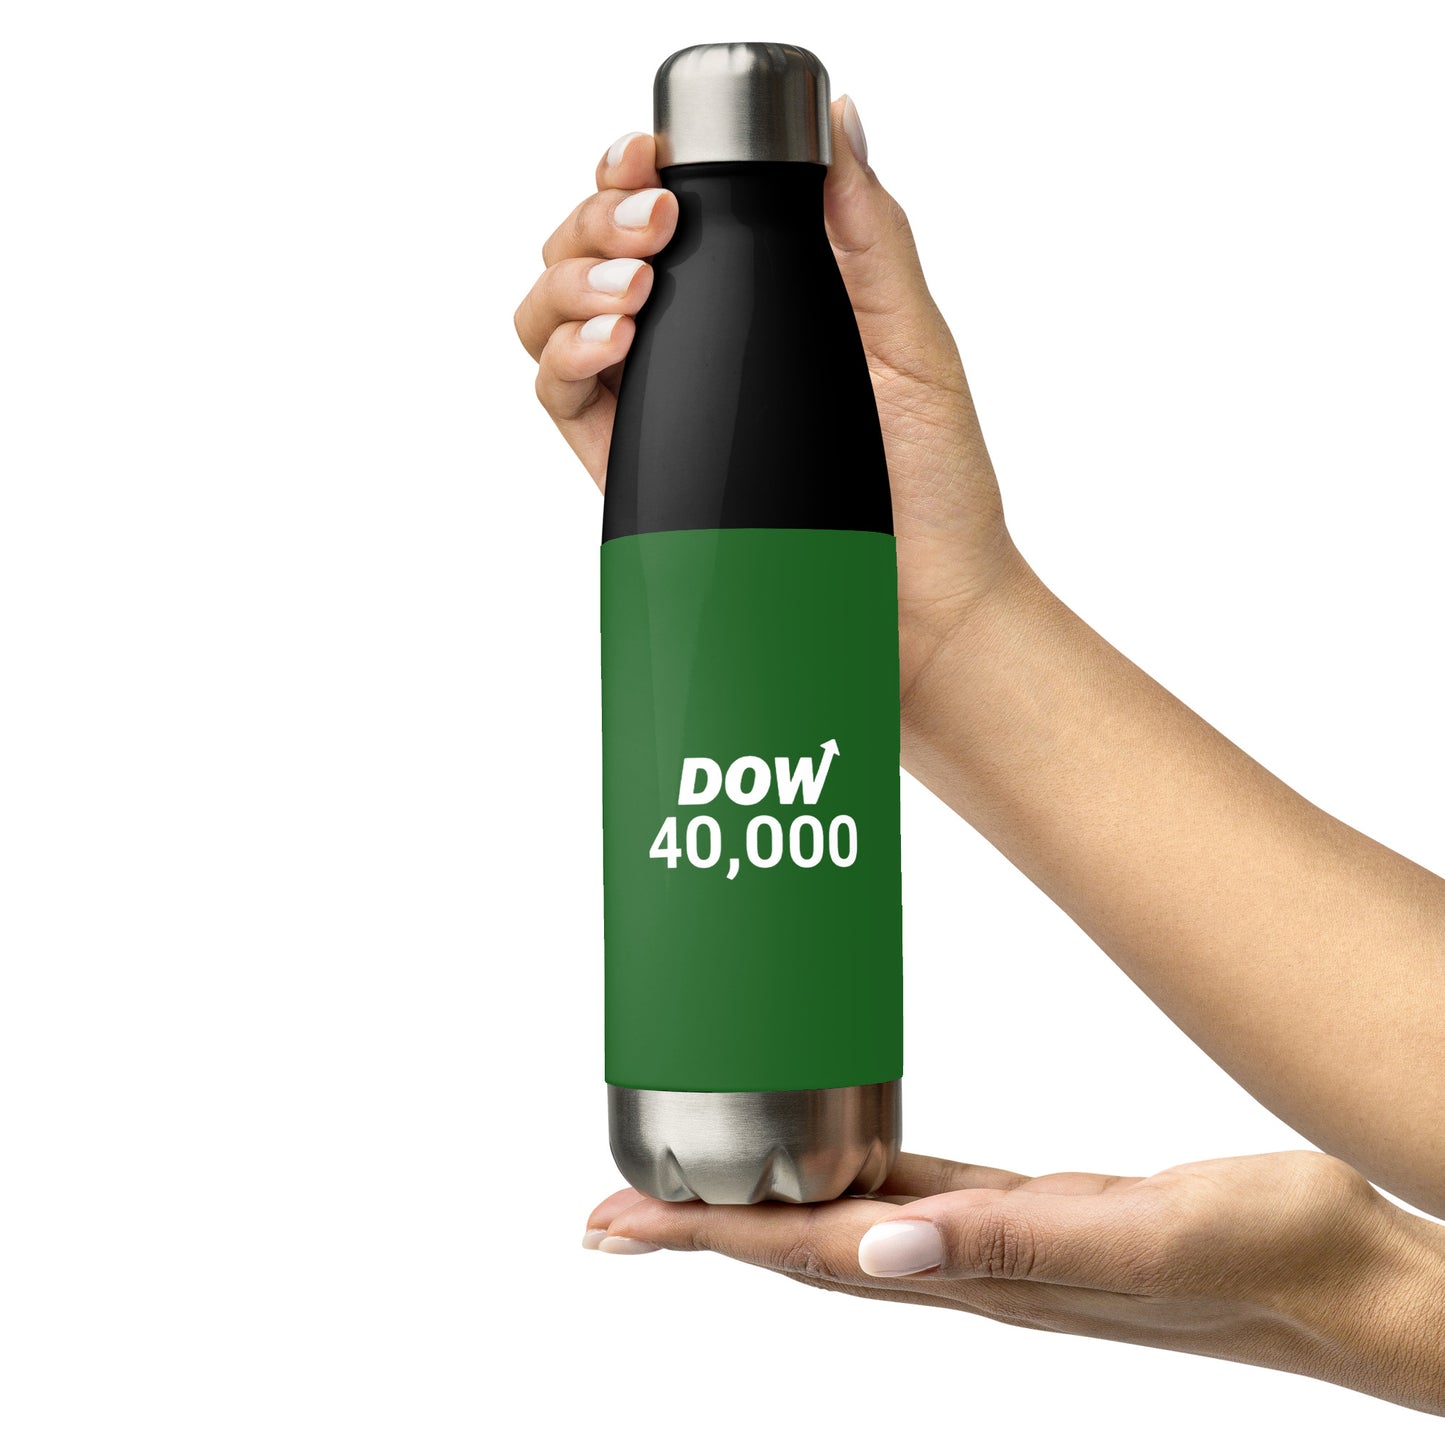 Dow 40.000 water bottle / Dow 40k Bottle /Stainless steel water bottle